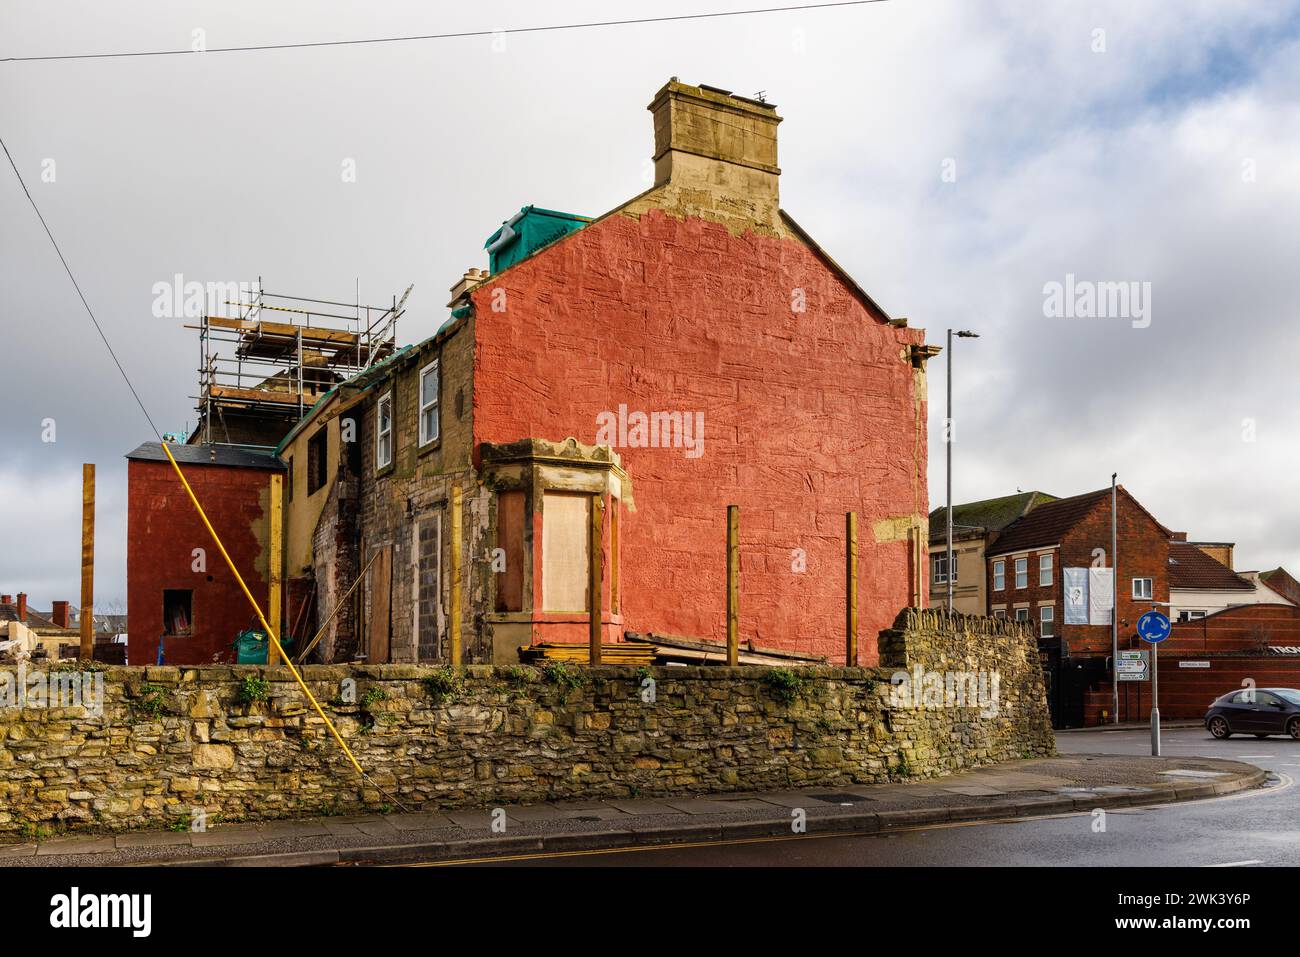 17 - 19 Stallard Street en cours de rénovation et peint en rouge pour le moment, Trowbridge, Wiltshire, Angleterre, Royaume-Uni Banque D'Images